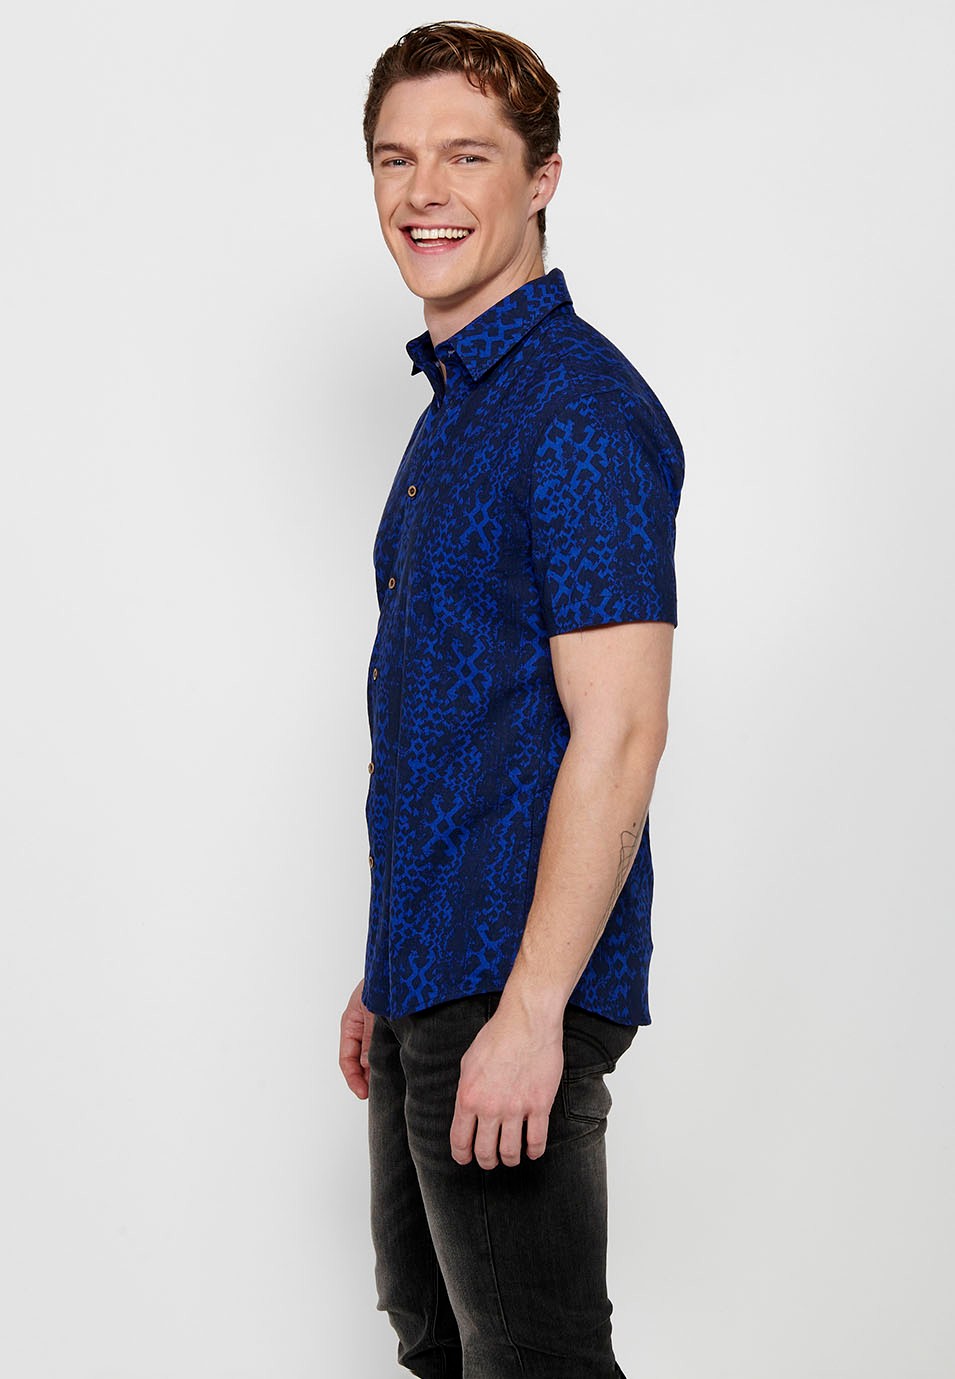 Blaues, kurzärmliges, bedrucktes Herrenhemd mit Knopfverschluss vorne